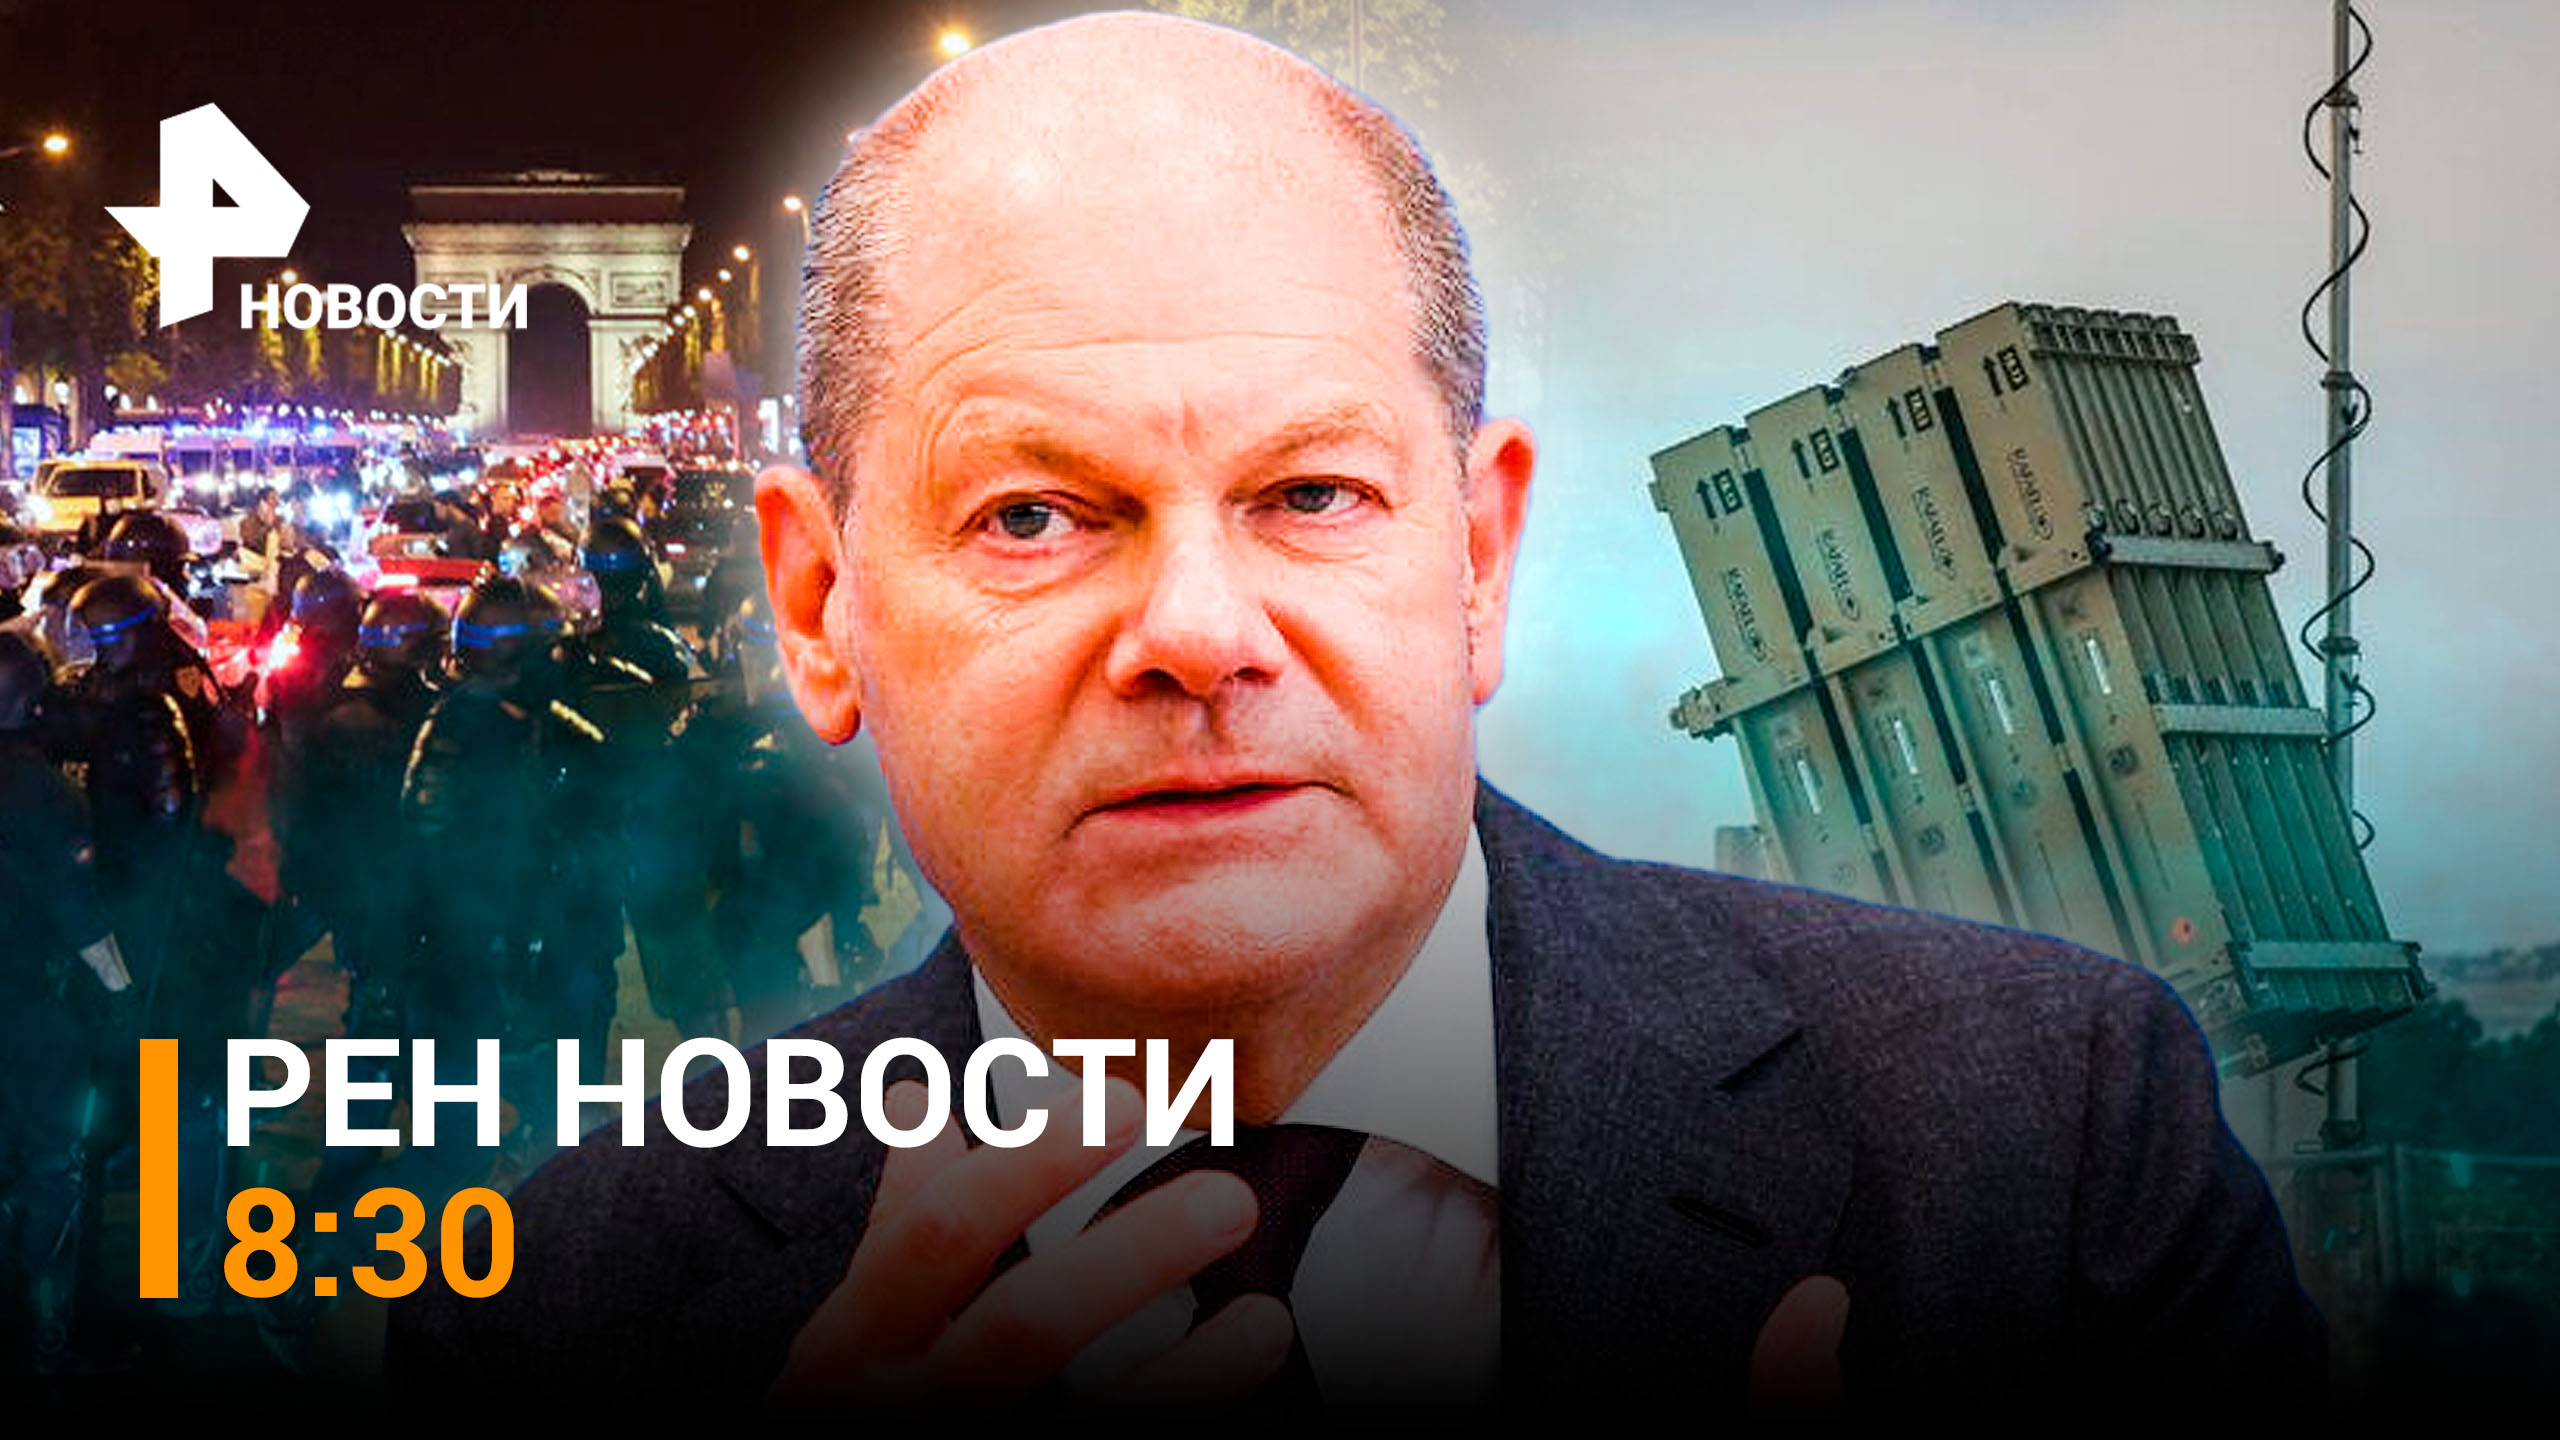 Шольц не рассчитывает на здравомыслие Украины: Германия против поставок оружия / РЕН НОВОСТИ 8:30